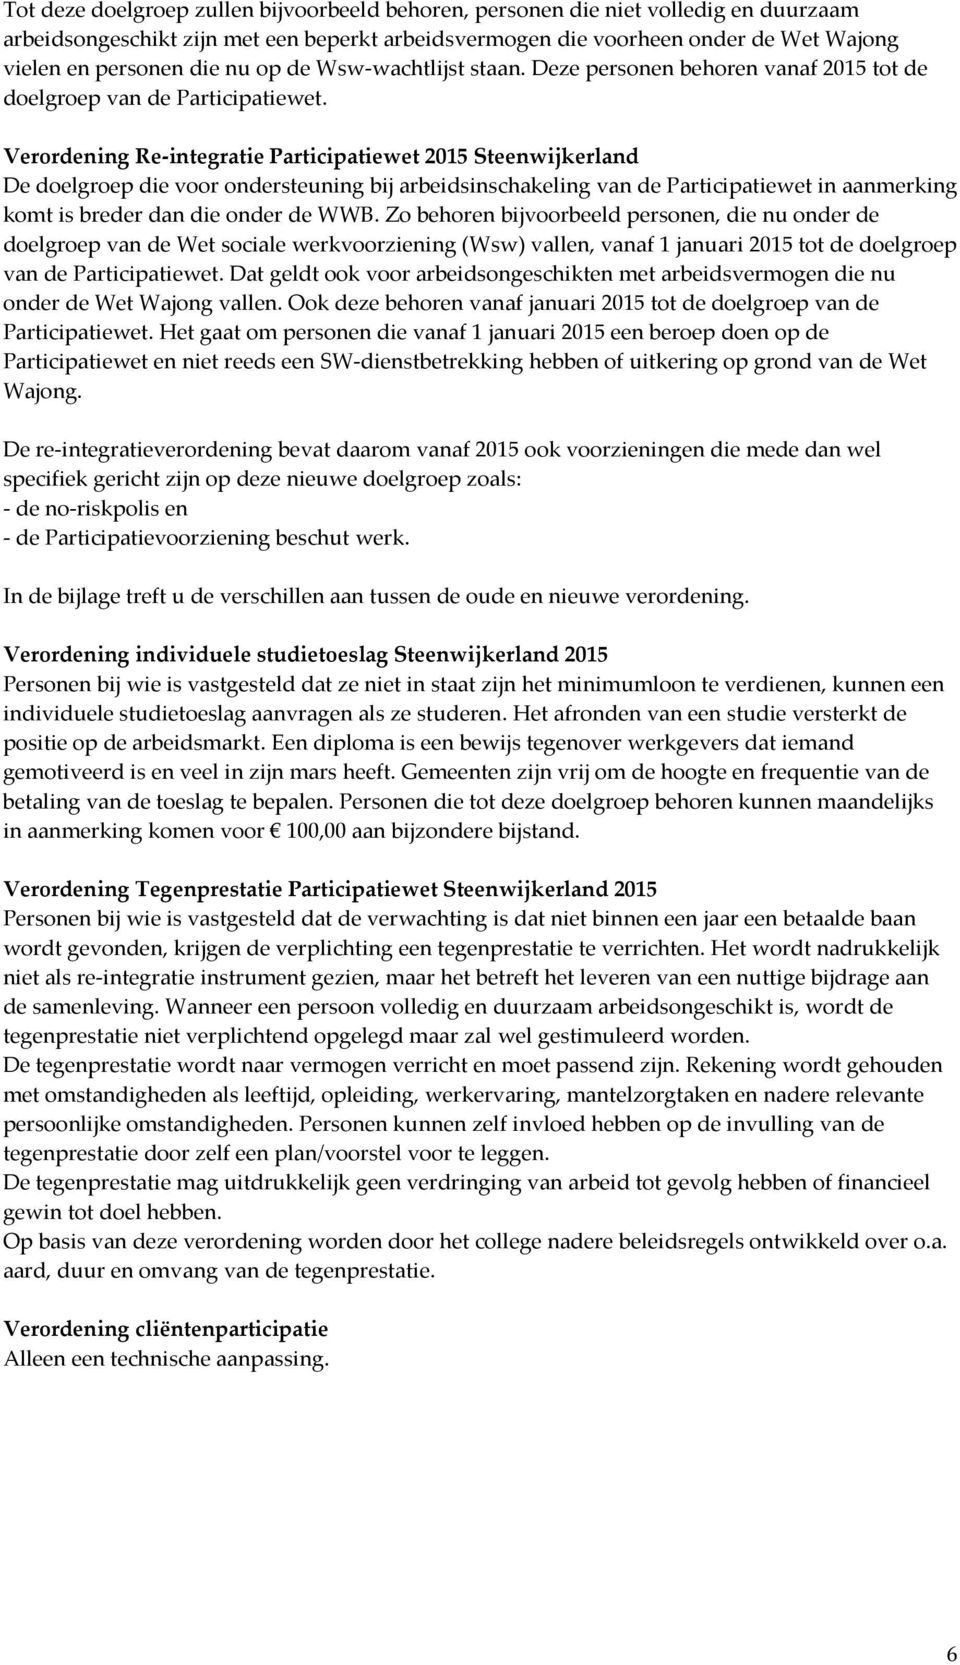 Verordening Re-integratie Participatiewet 2015 Steenwijkerland De doelgroep die voor ondersteuning bij arbeidsinschakeling van de Participatiewet in aanmerking komt is breder dan die onder de WWB.